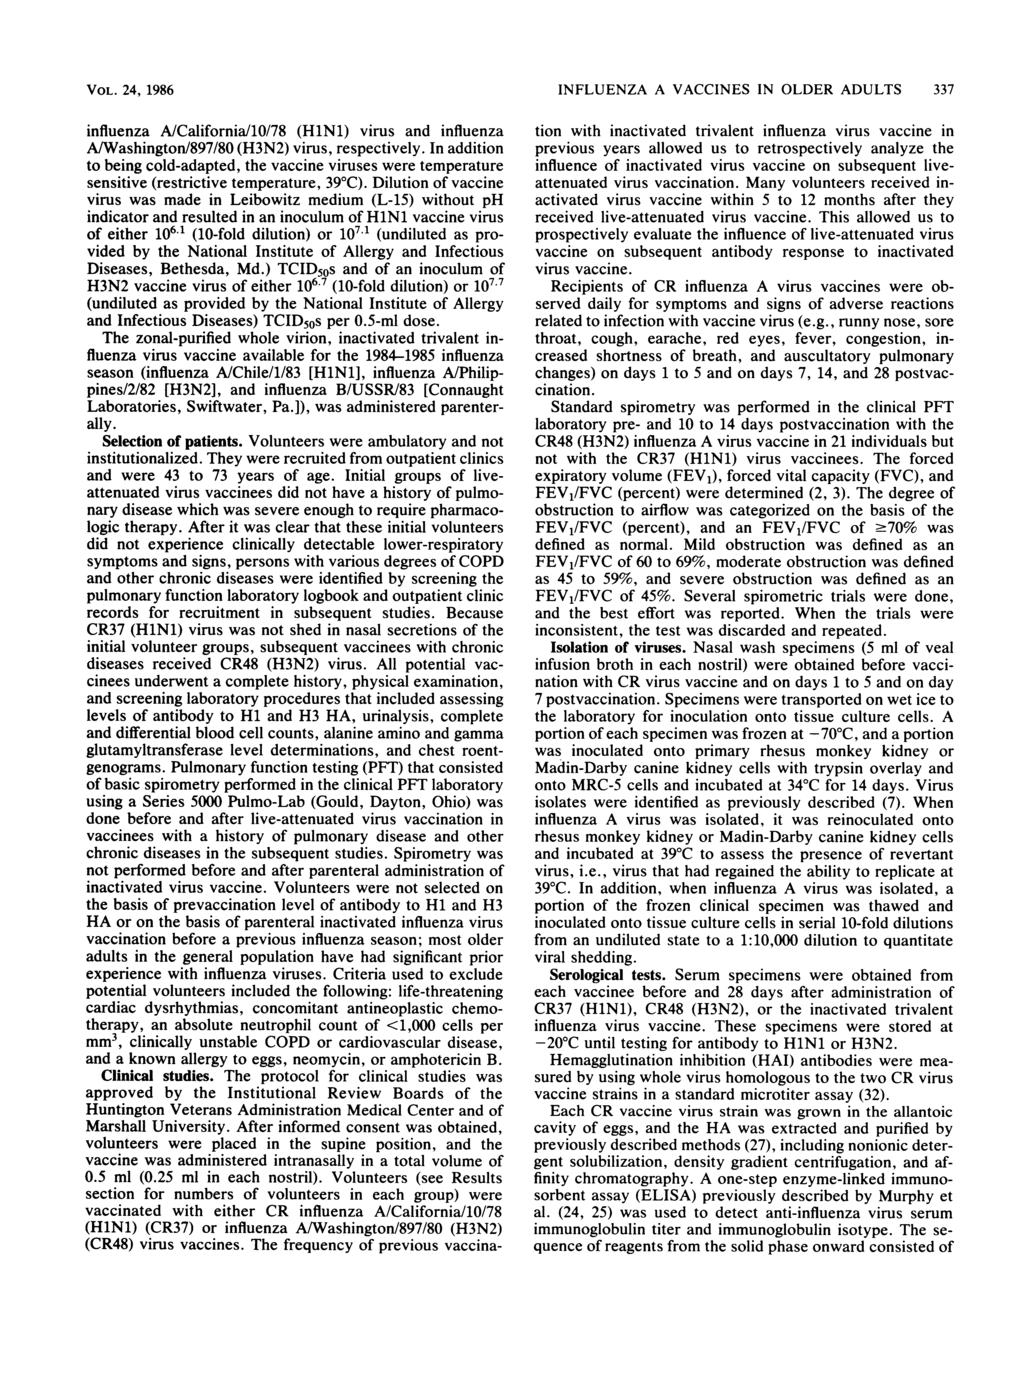 VOL. 24, 1986 influenz A/Cliforni/10/78 (HlNl) virus nd influenz A/Wshington/897/80 (H3N2) virus, respectively.